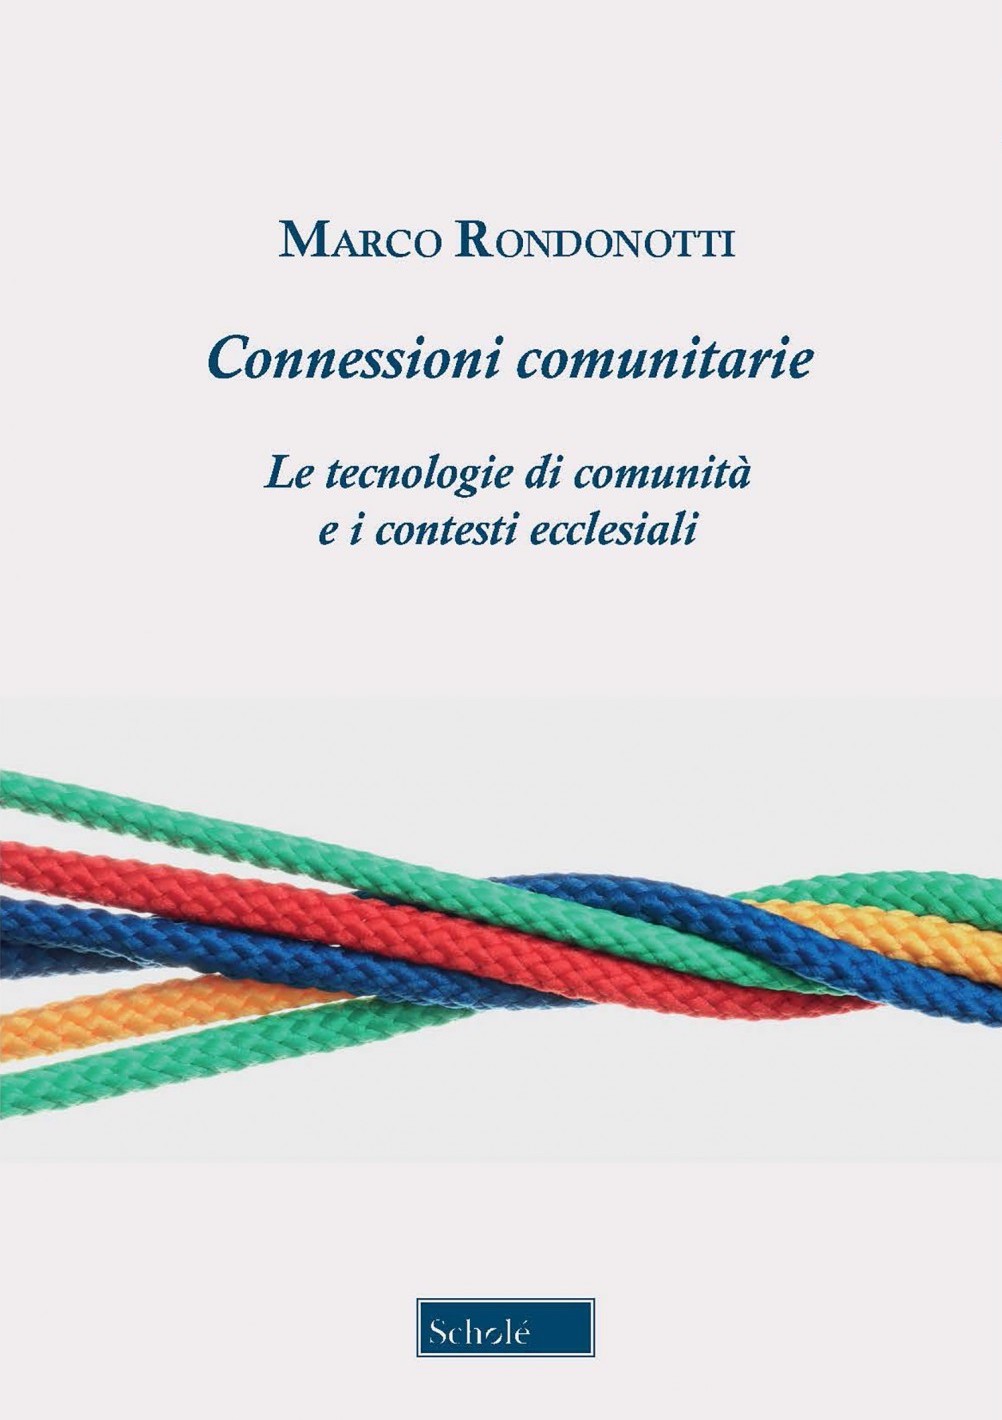 [Libro] Connessioni comunitarie. Le tecnologie di comunità e i contesti ecclesiali, di Marco Rondonotti